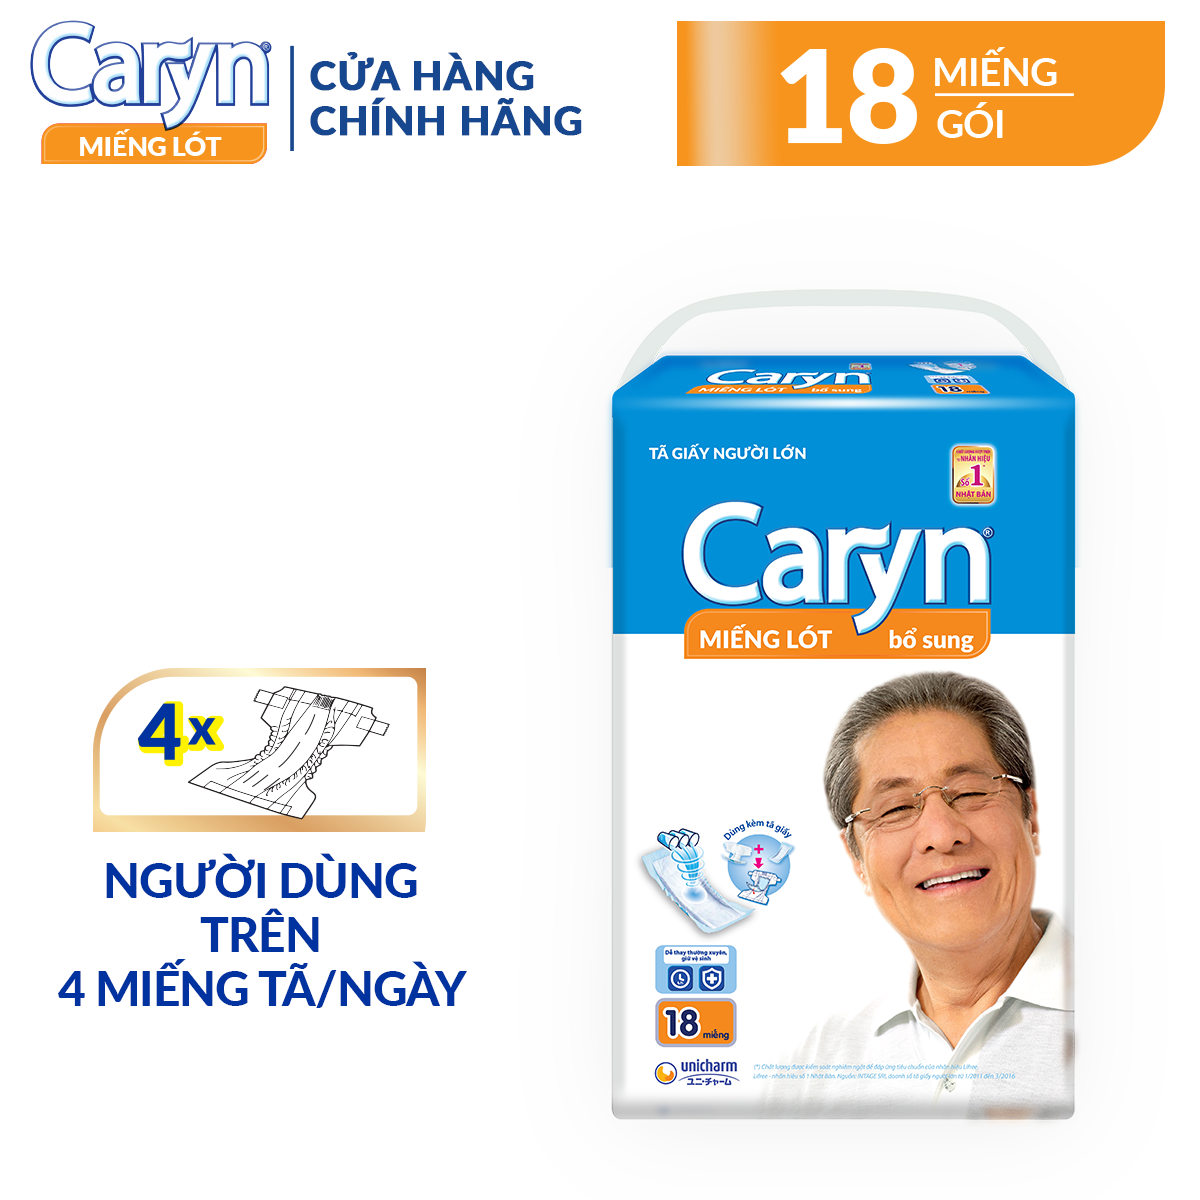 Miếng lót bổ sung Caryn 18 miếng cho người lớn (dùng trên 4 miếng/ngày), với công nghệ nano bạc kháng khuẩn ngăn ngừa vi khuẩn và kiểm soát mùi hiệu quả